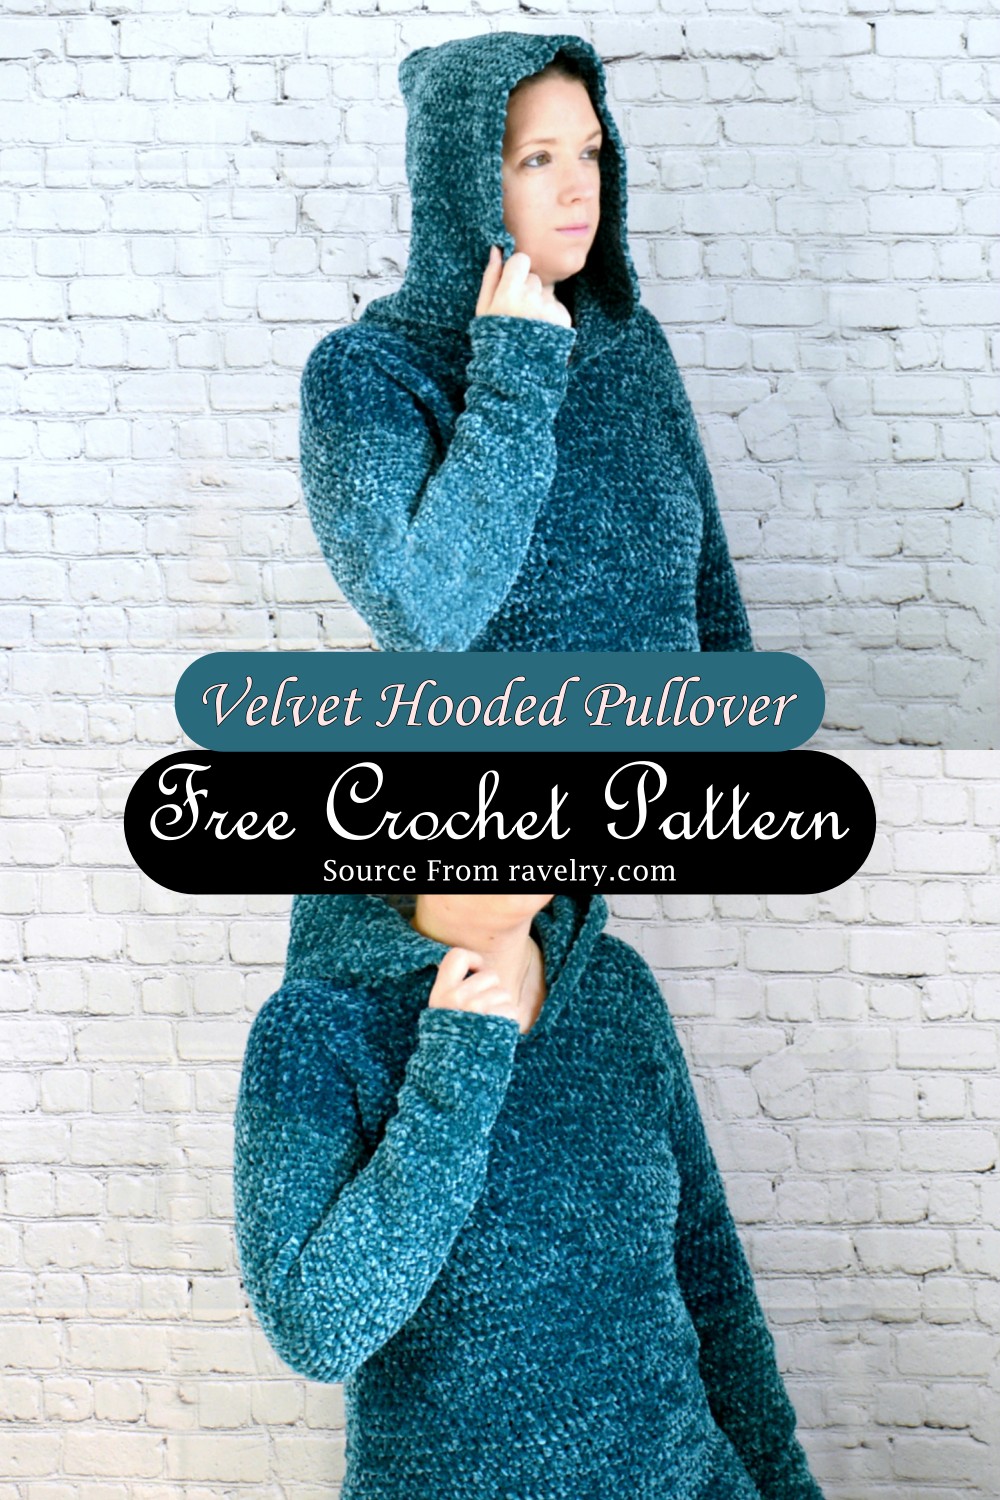 Velvet Hooded Pullover